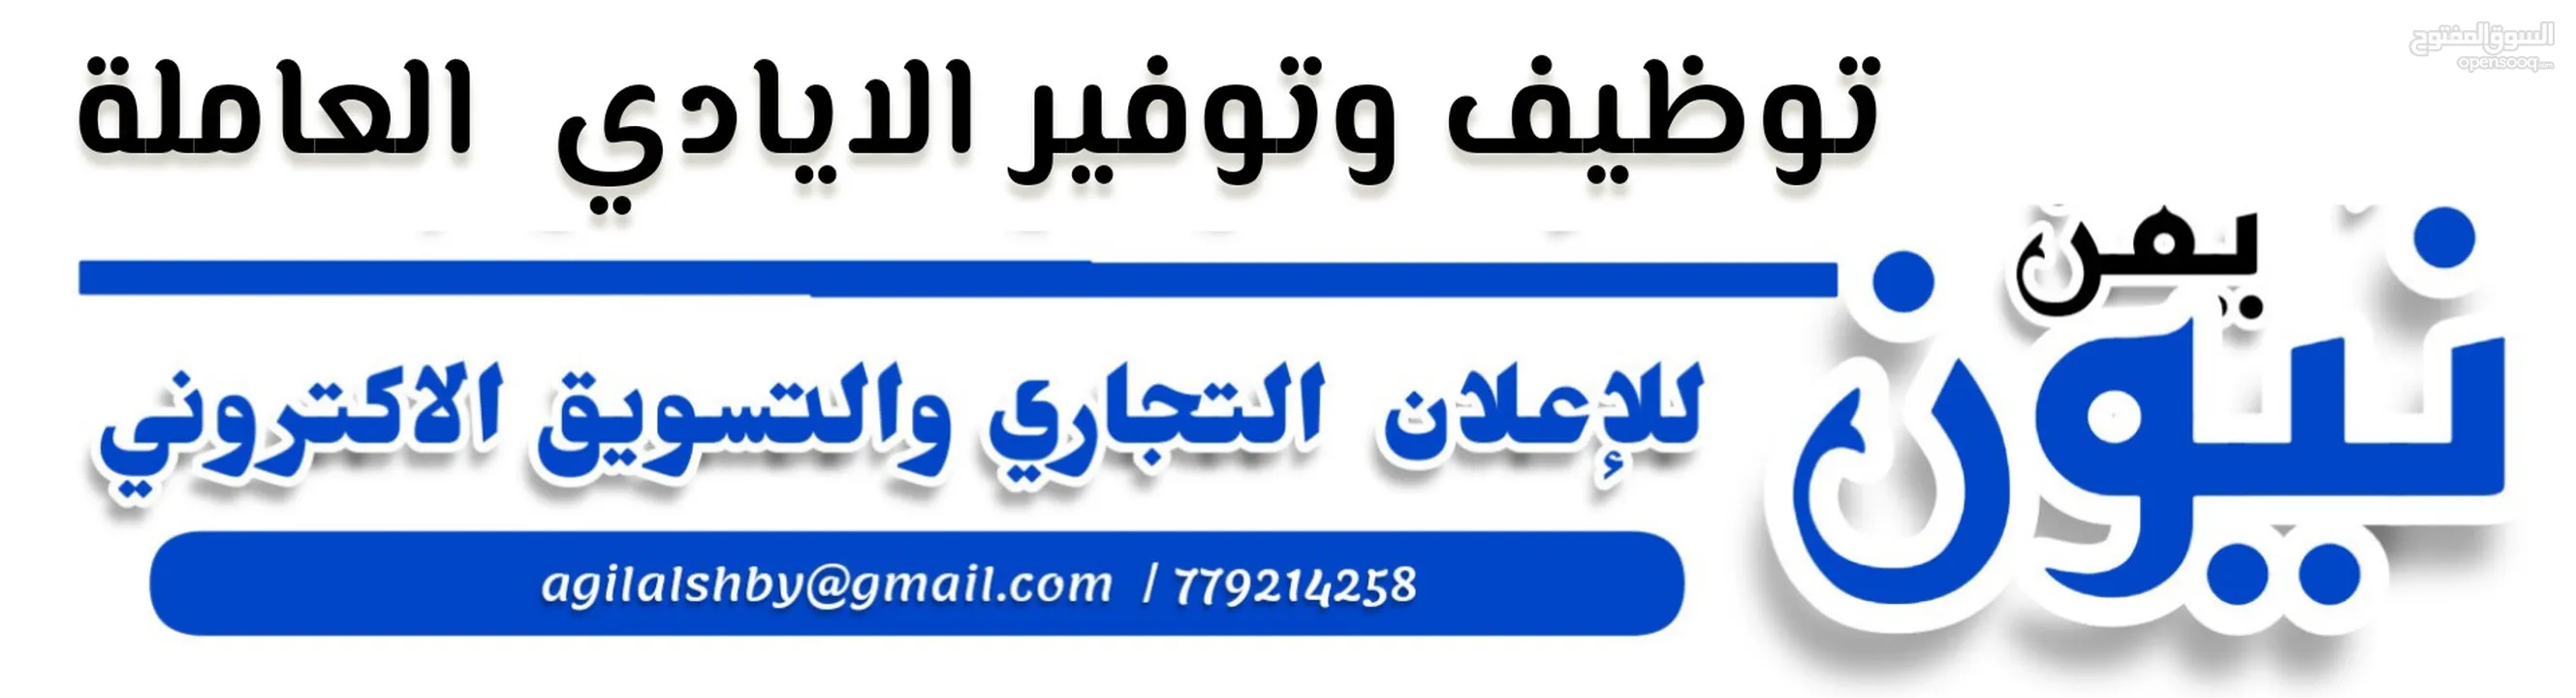 مجموعات نيون يمن للإعلان والتسويق بيع وشراء كل شي / مسوقين ومسوقات / مجانا